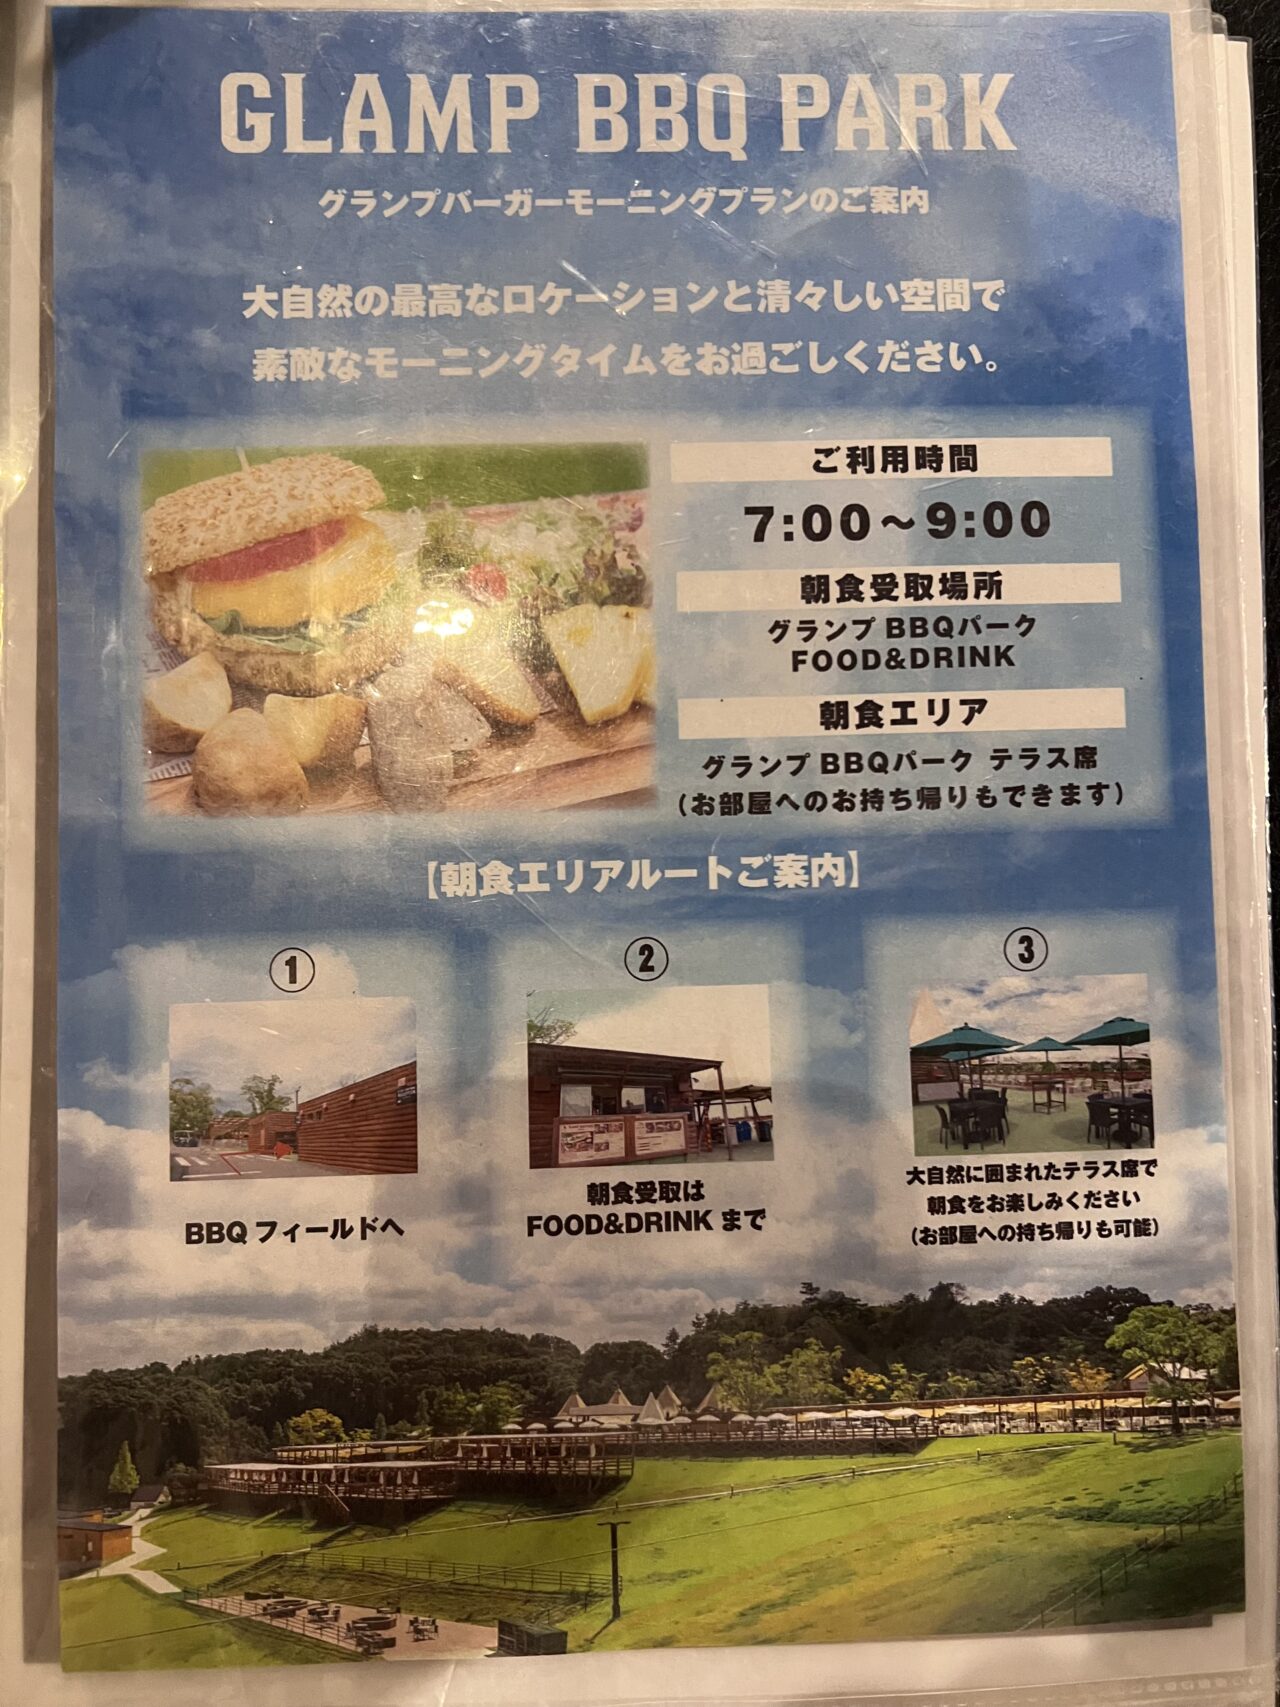 ネスタリゾート神戸のグランピング施設「GLAMP BBQ PARK」の朝食メニュー